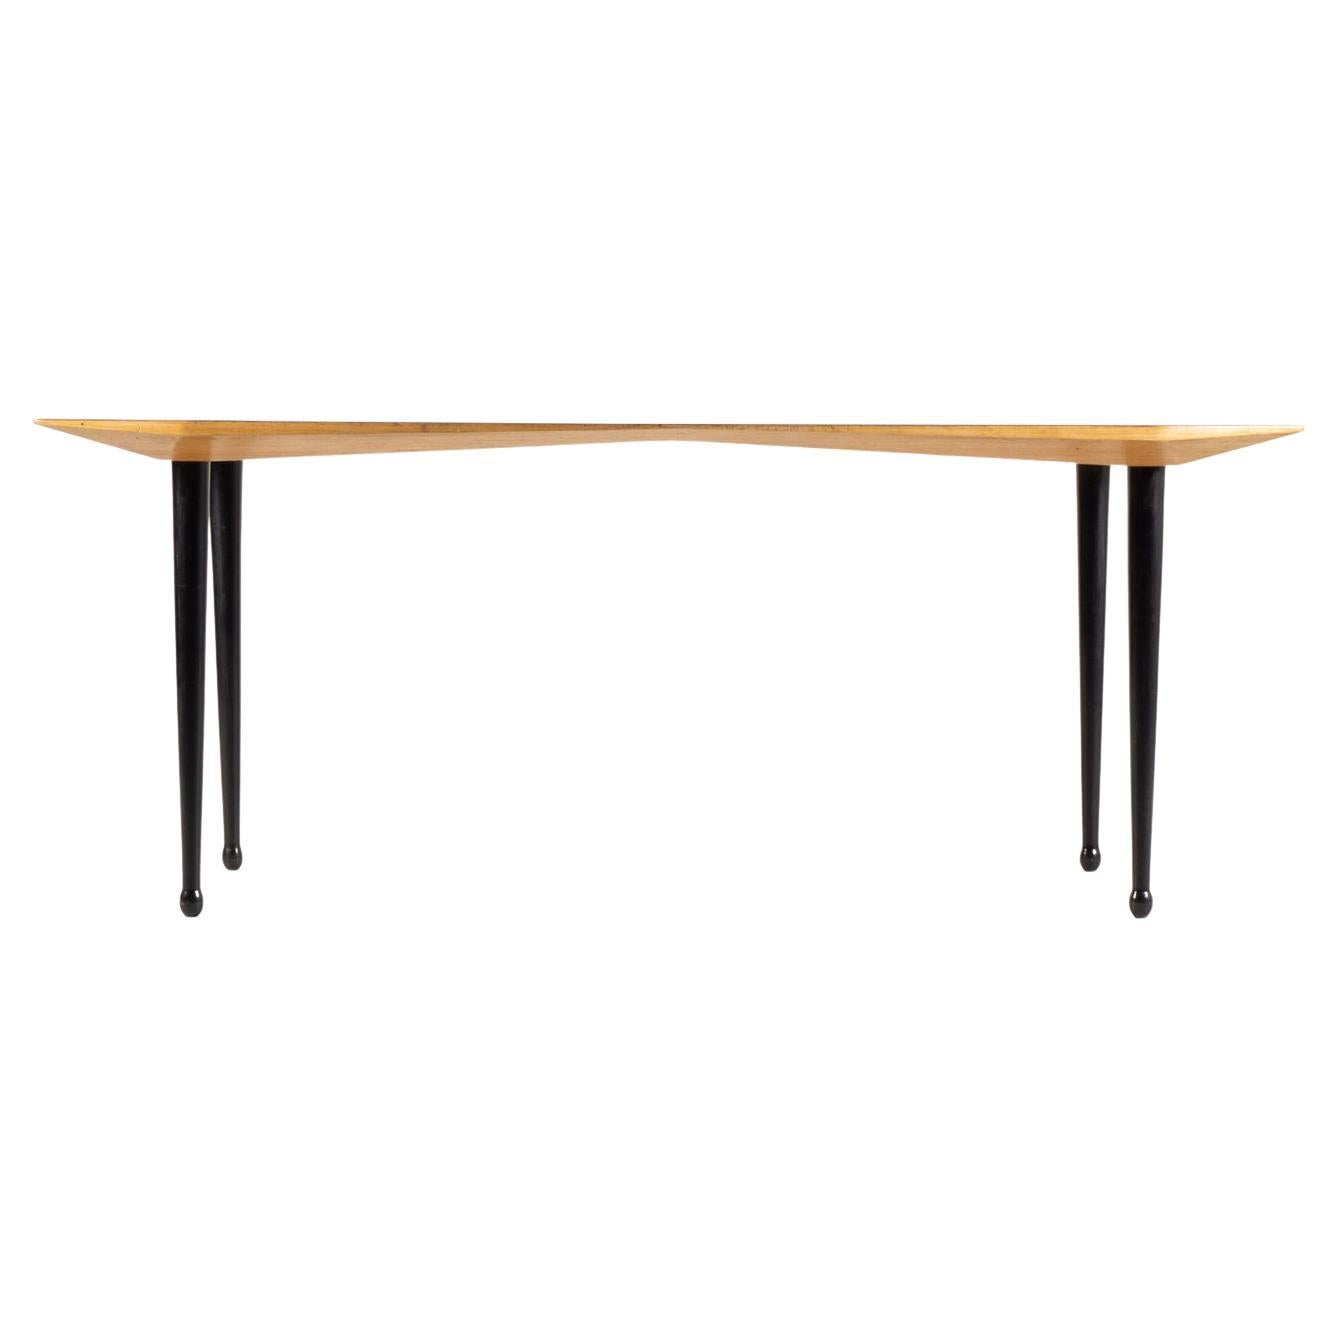 Table / Carlo de Carli / Tecno Milano For Sale